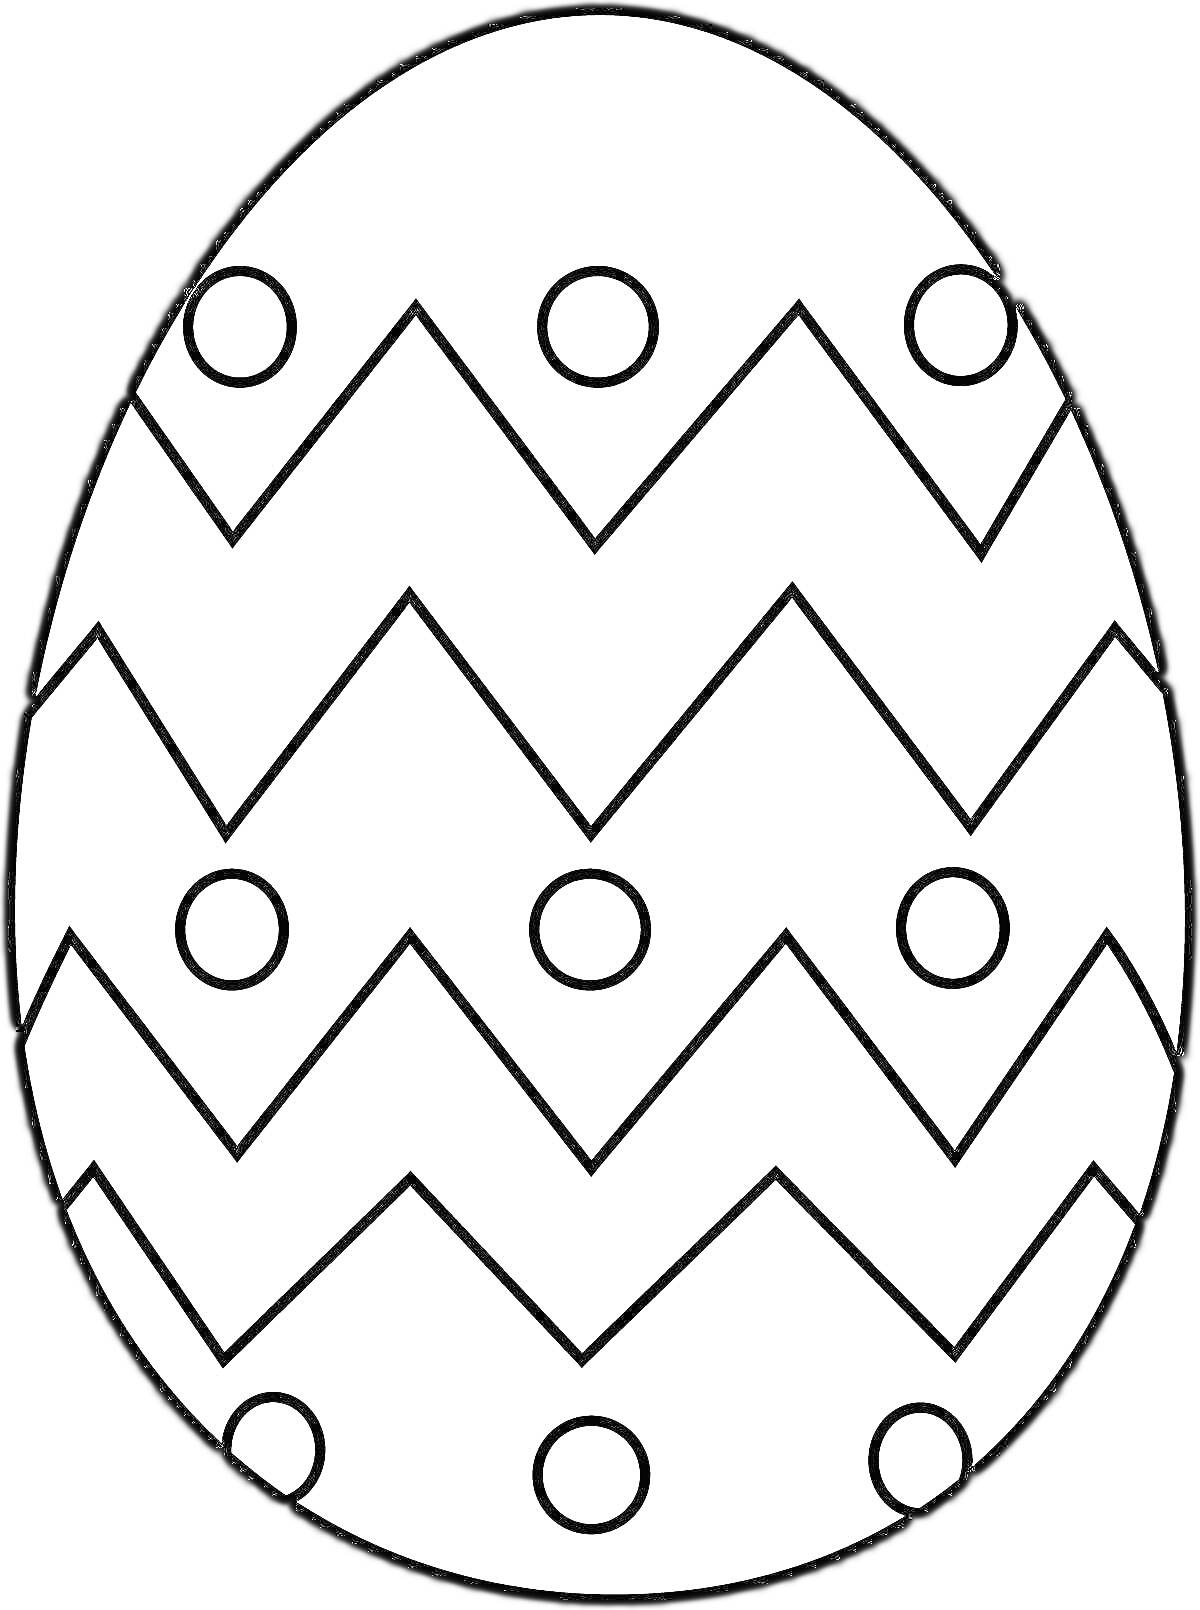 Раскраска Пасхальное яйцо с зигзагами и кружками